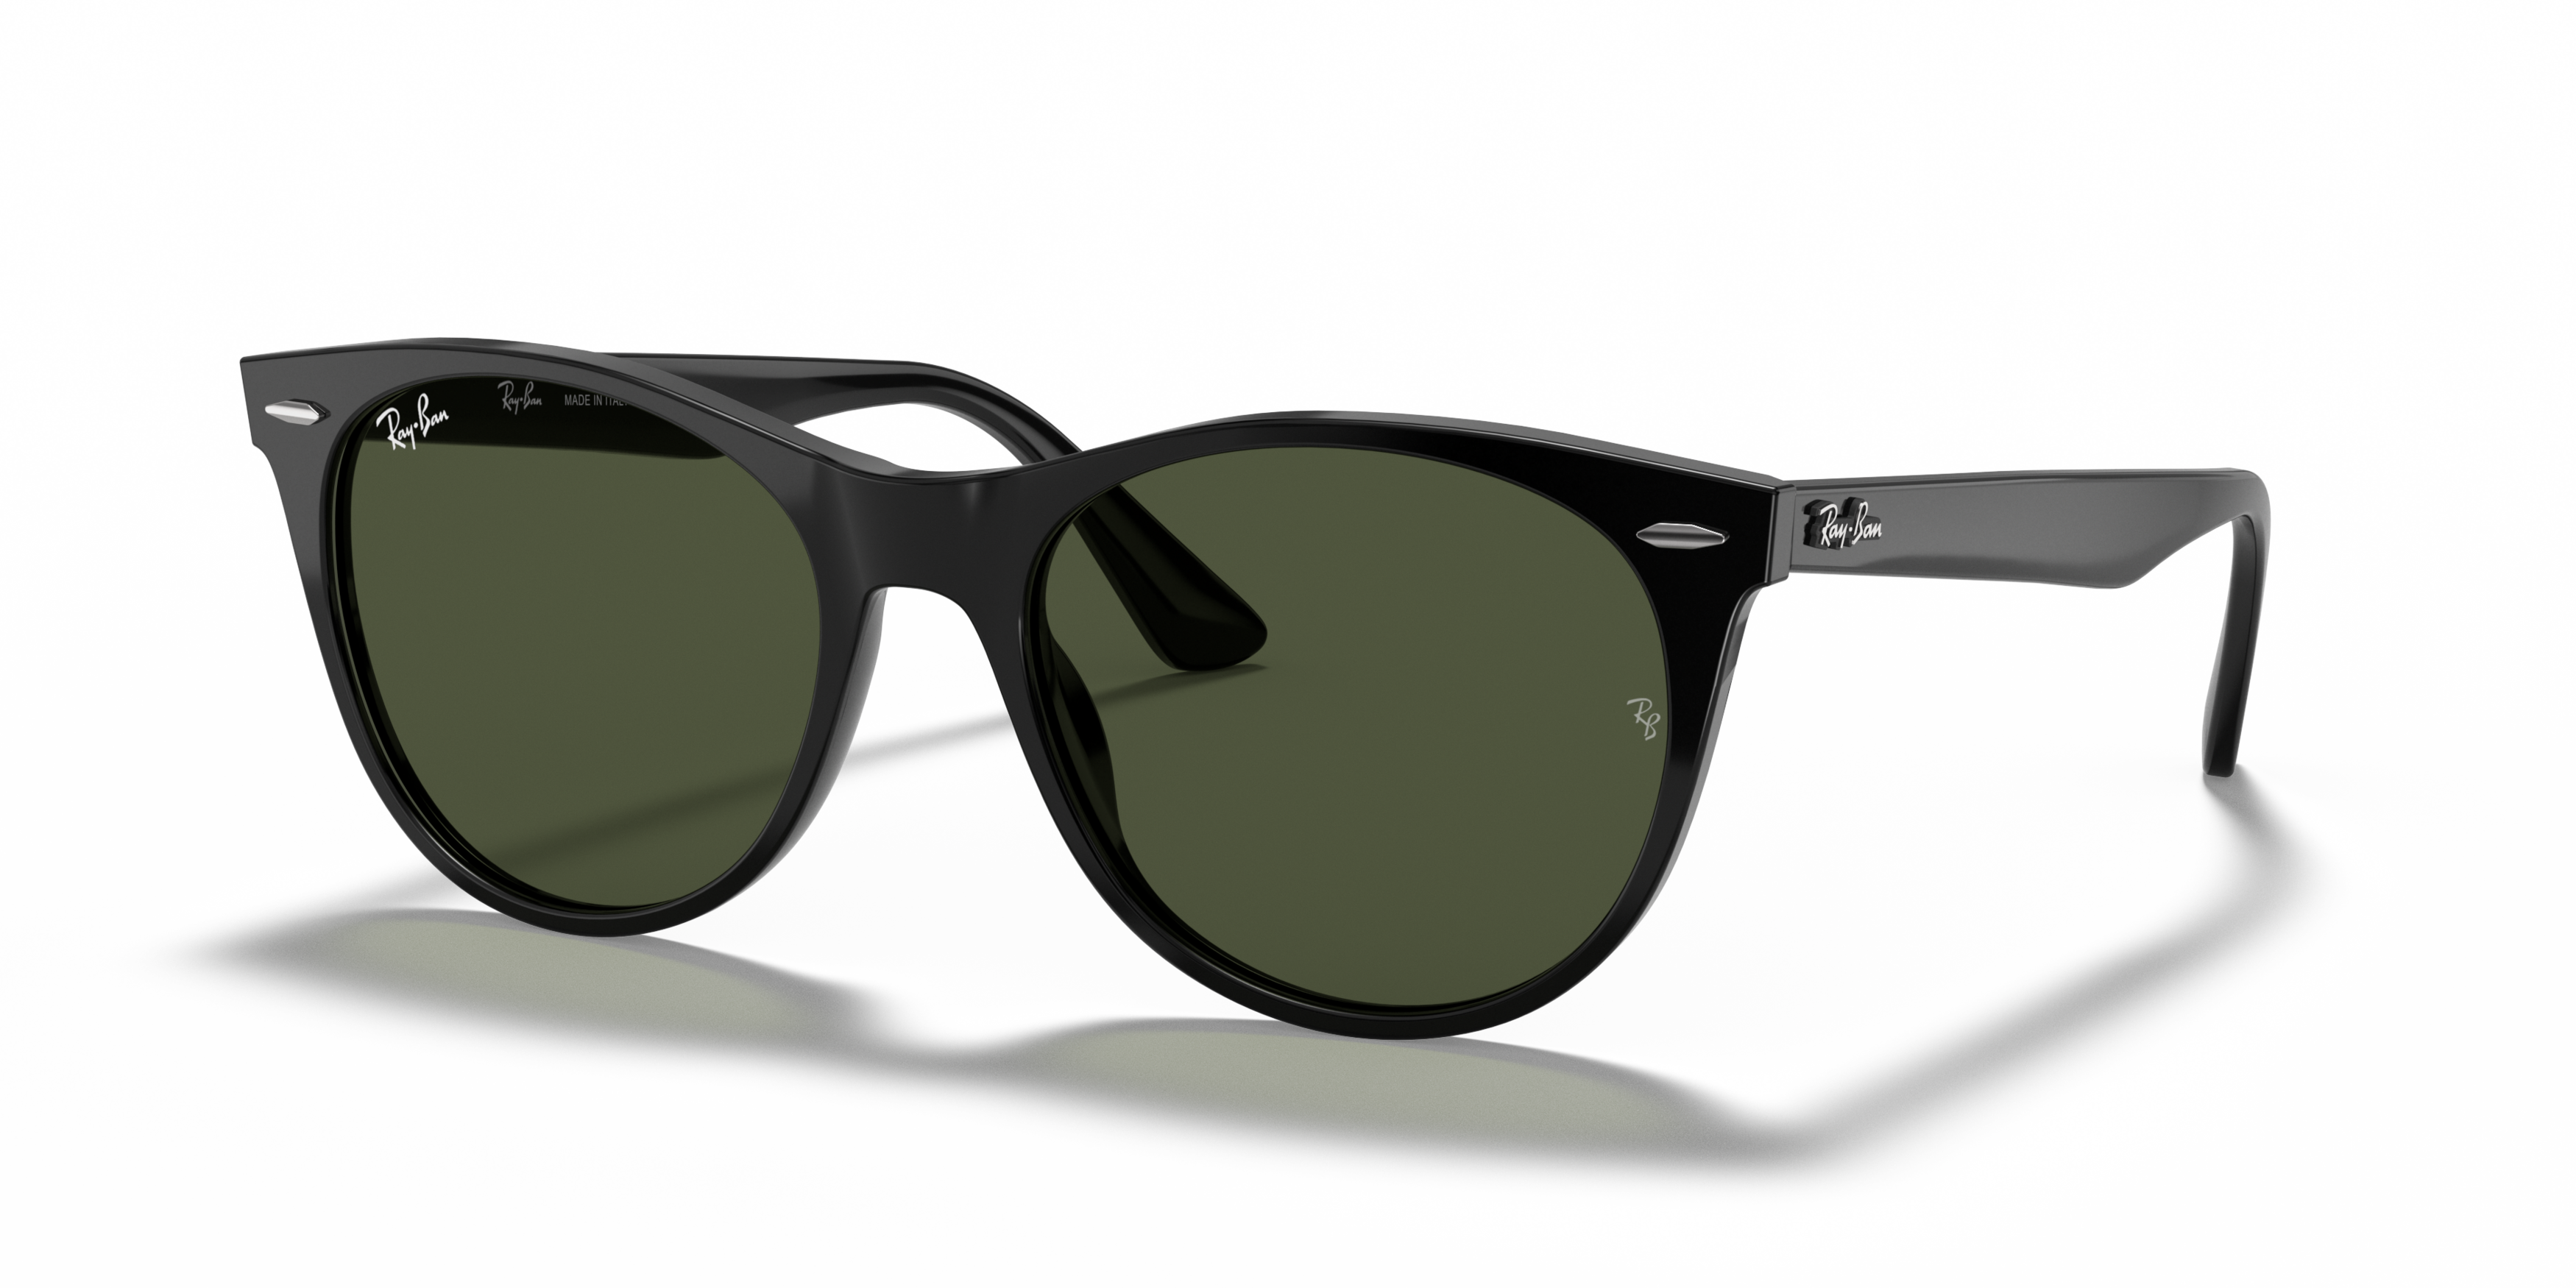 Angle_Left01 Ray-Ban Wayfarer II RB 2185 (901/58) Sunglasses Green / Black